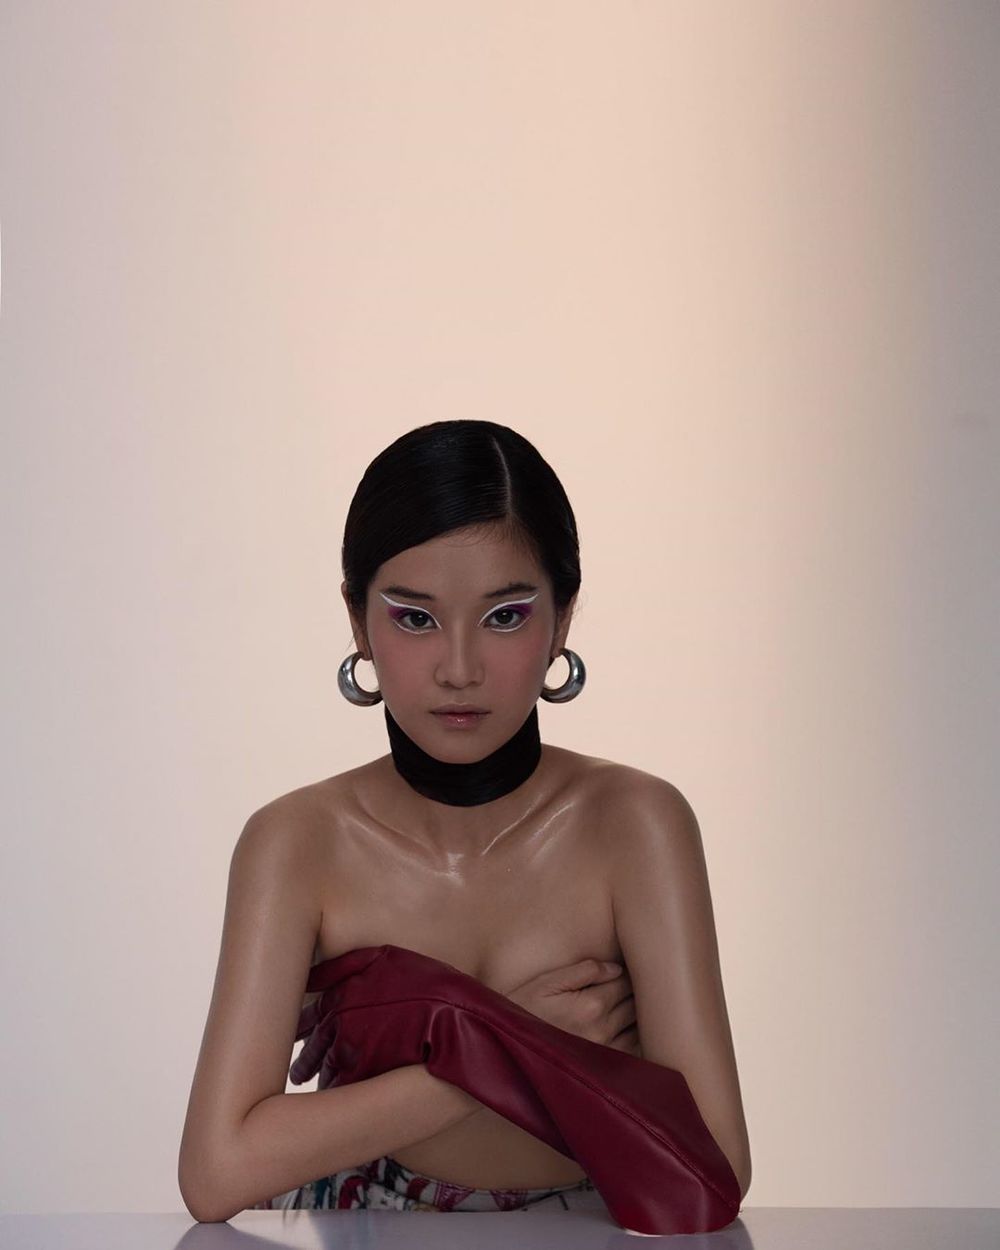   
Hoàng Yến Chibi "chơi lớn" với bộ ảnh bán nude. Cô trang điểm, kẻ mắt và sử dụng phụ kiện cá tính. (Ảnh: Instagram nhân vật)